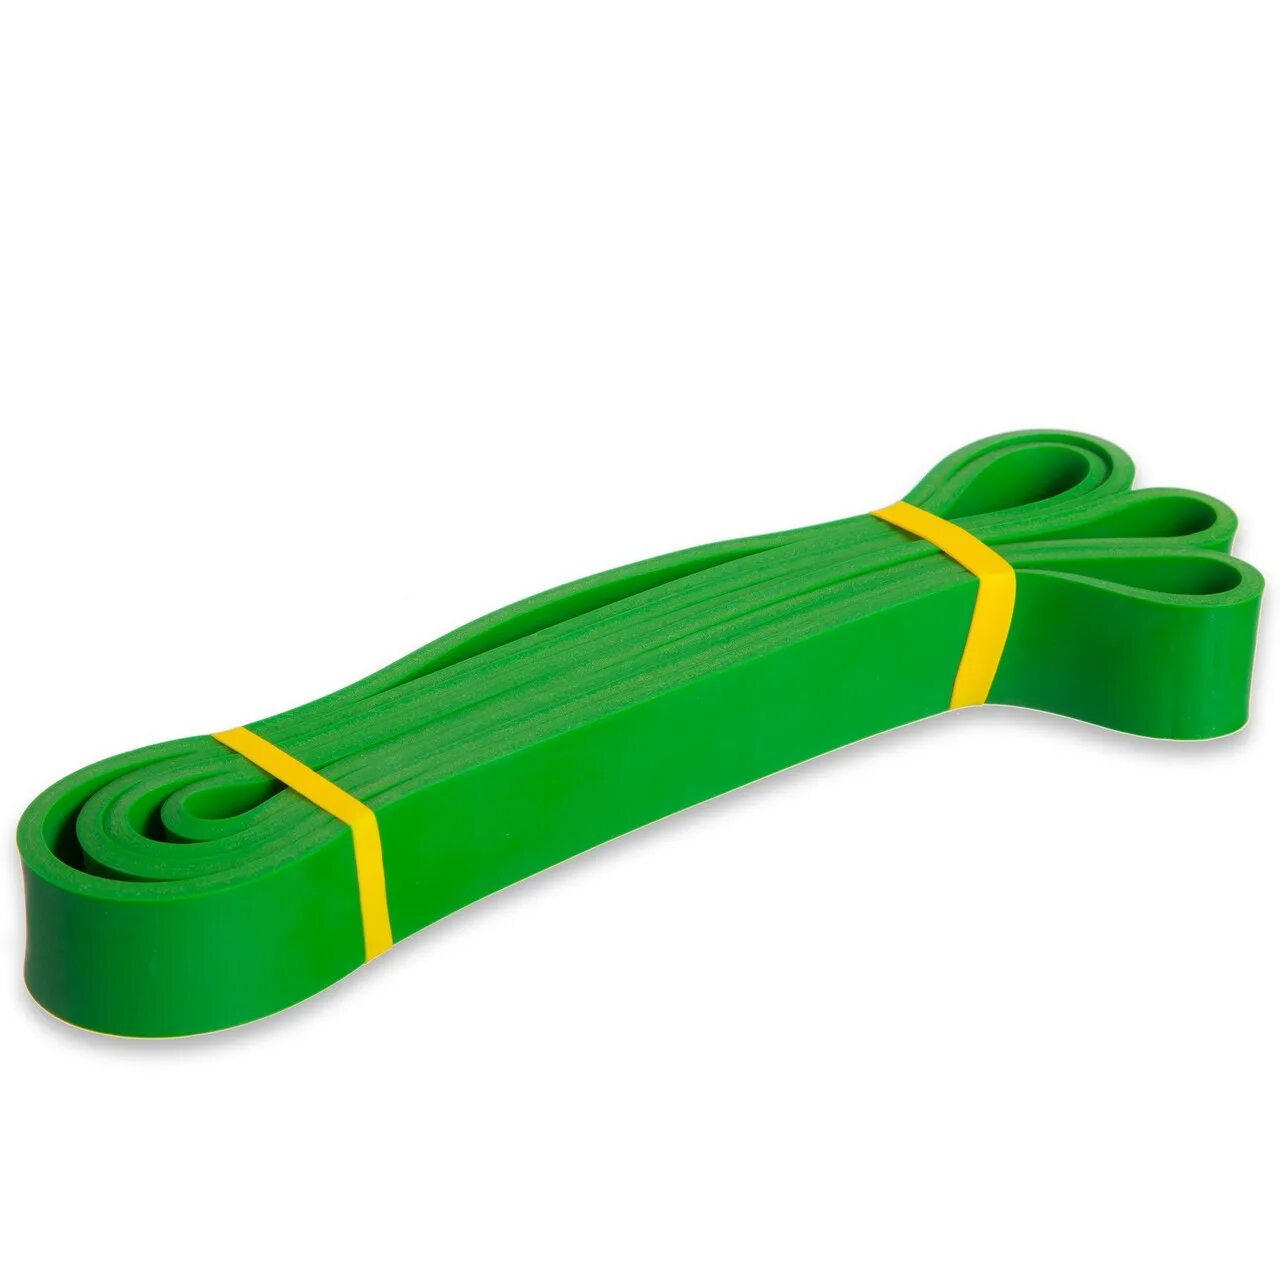 Резиновая петля для подтягивания. Zelart резинка зелёная. Эспандер для подтягивания. Резинка для фитнеса с петлями. Резинка для подтягивания.